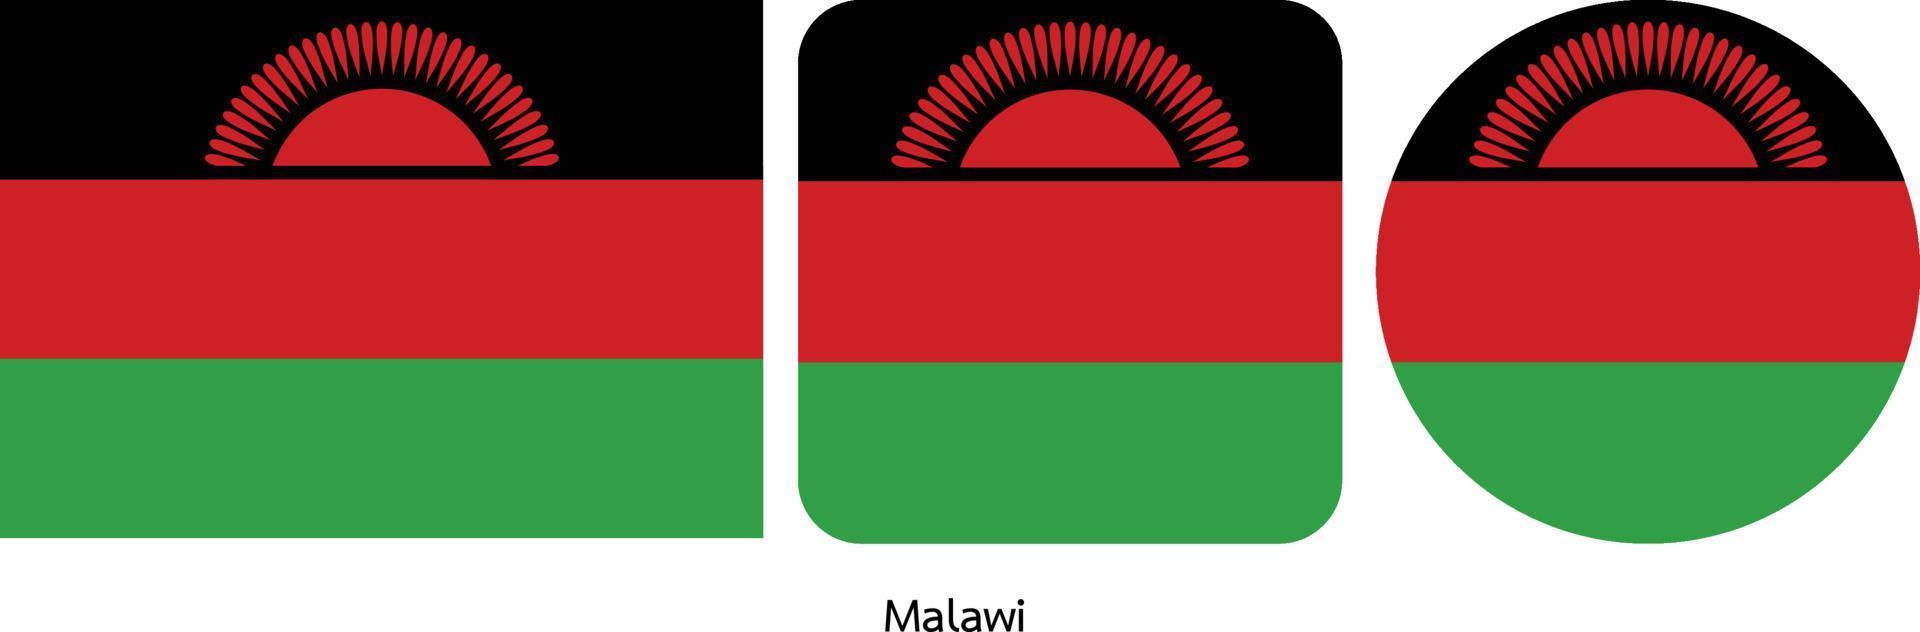 Malawi-Flagge, Vektorillustration vektor